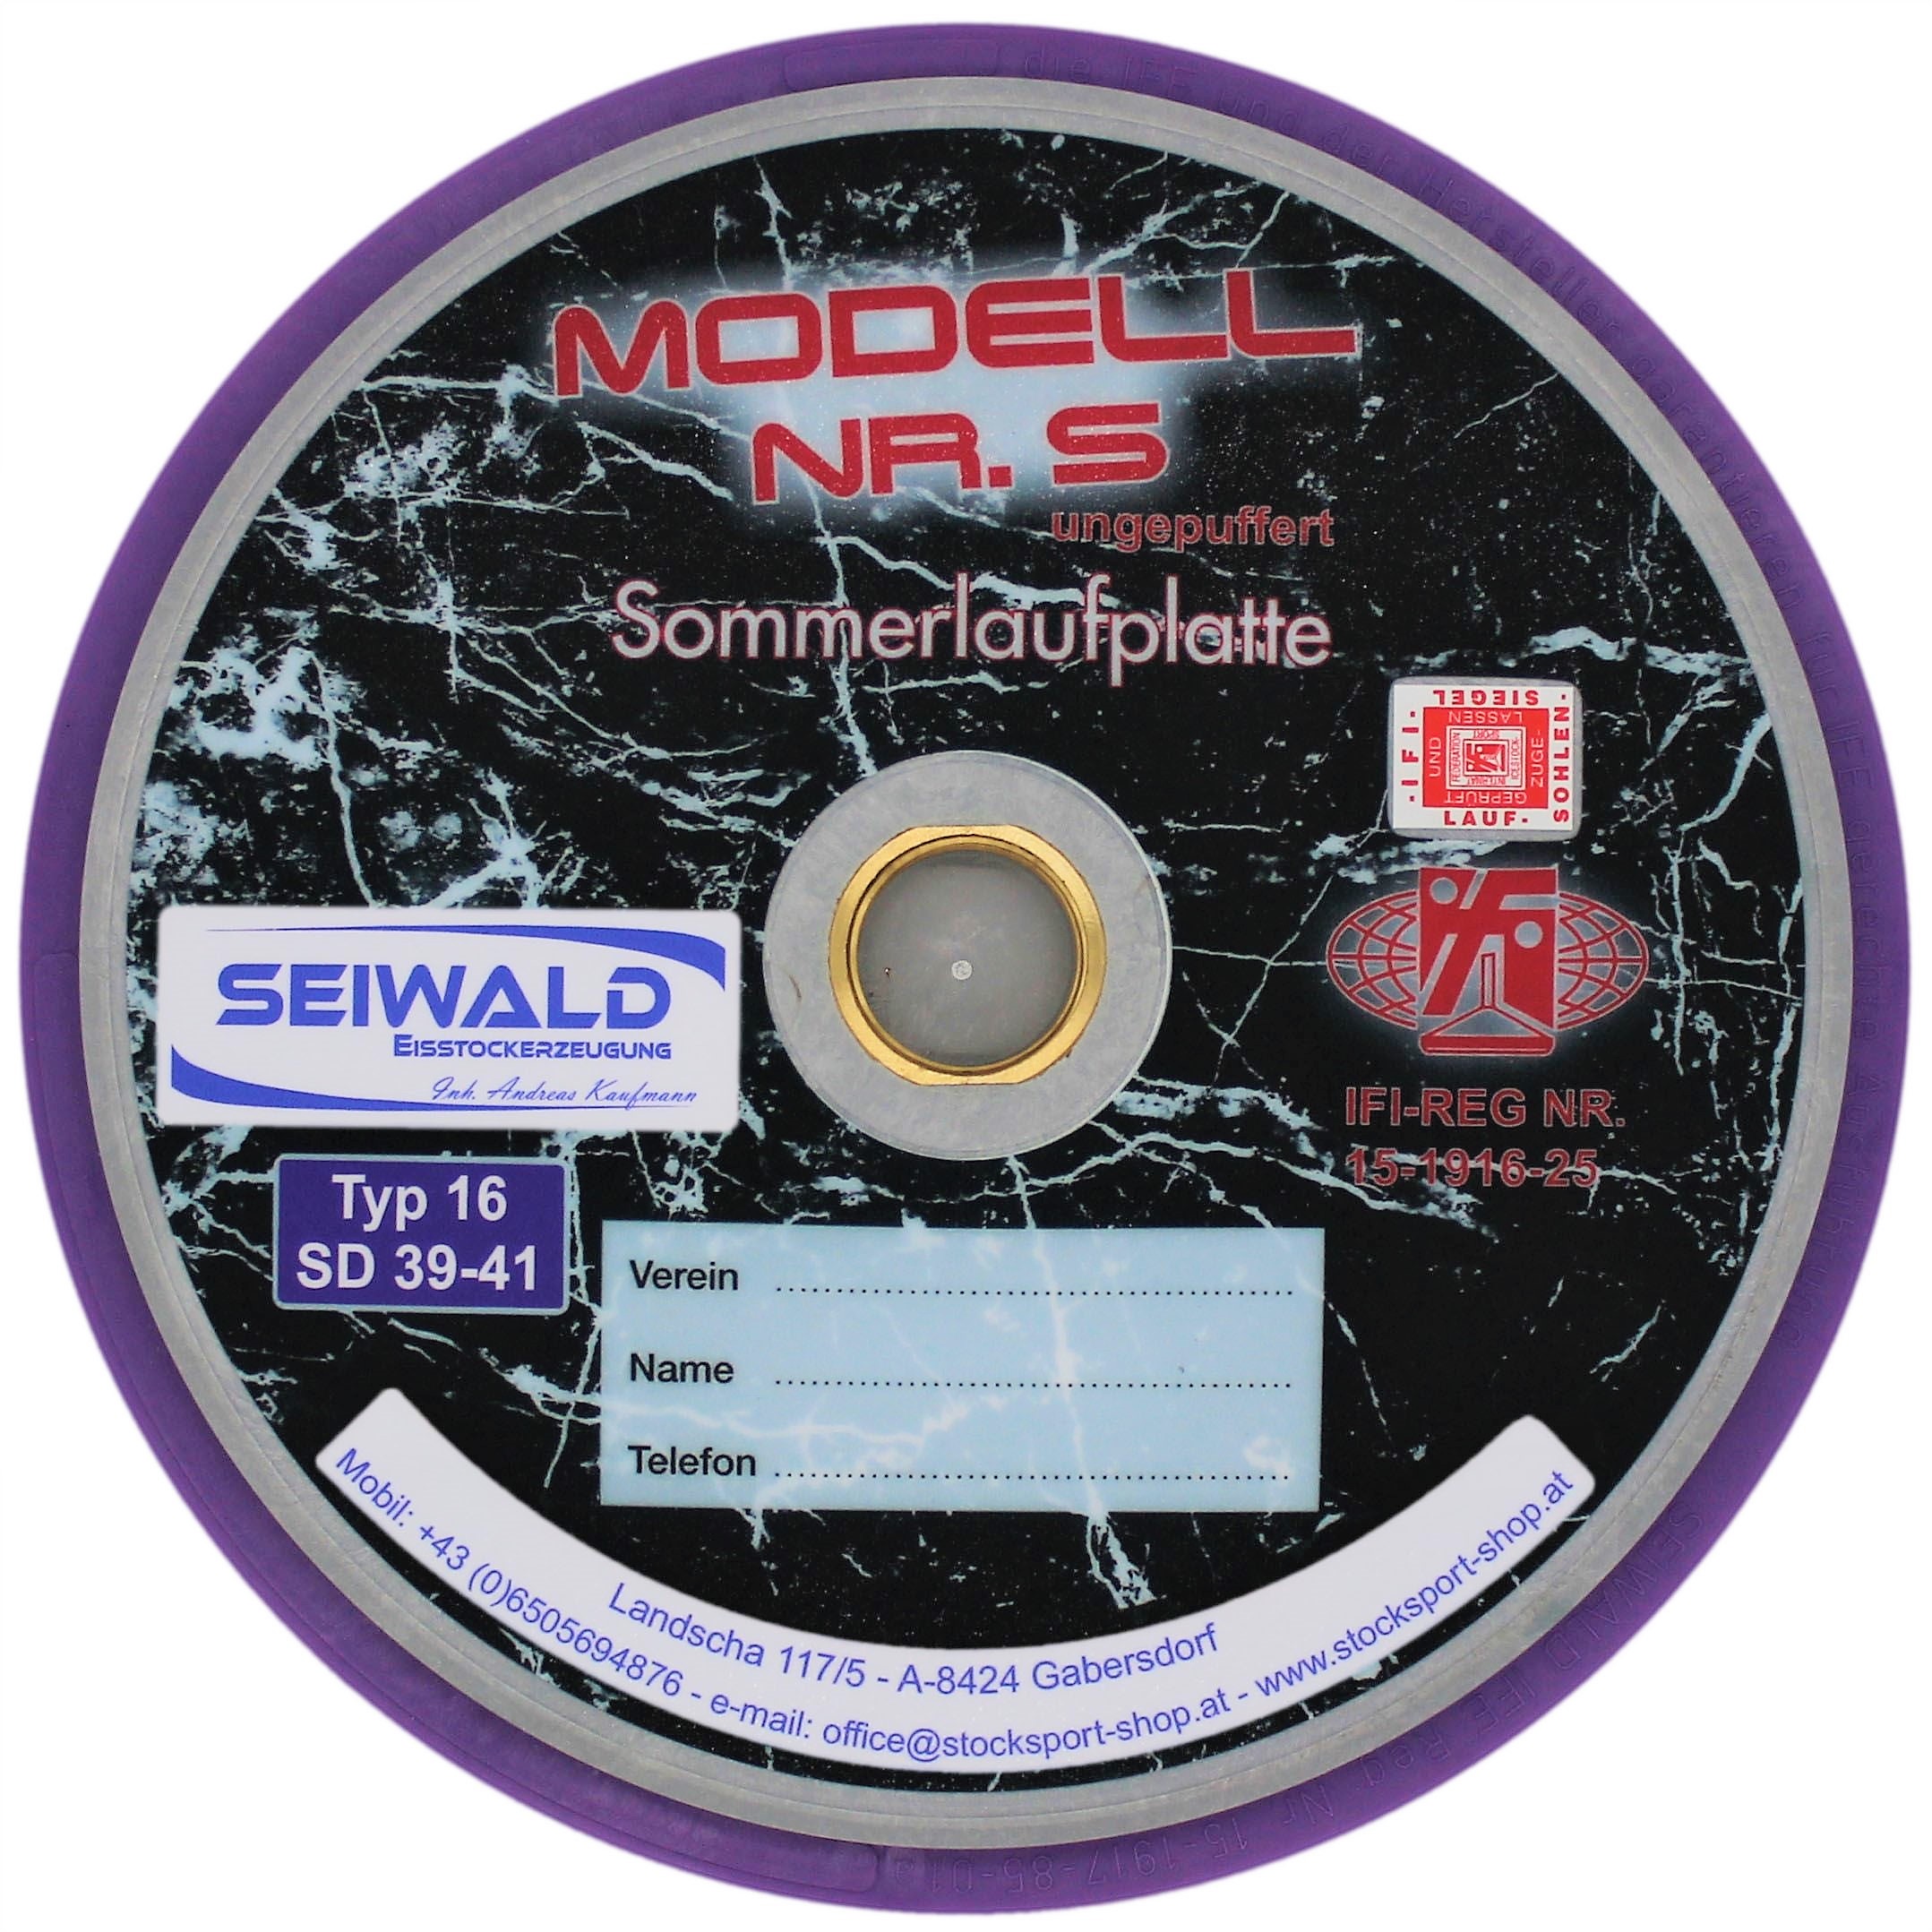 SEIWALD Modell 5 Lila verschraubt / Schnellere Mass und Stockpla